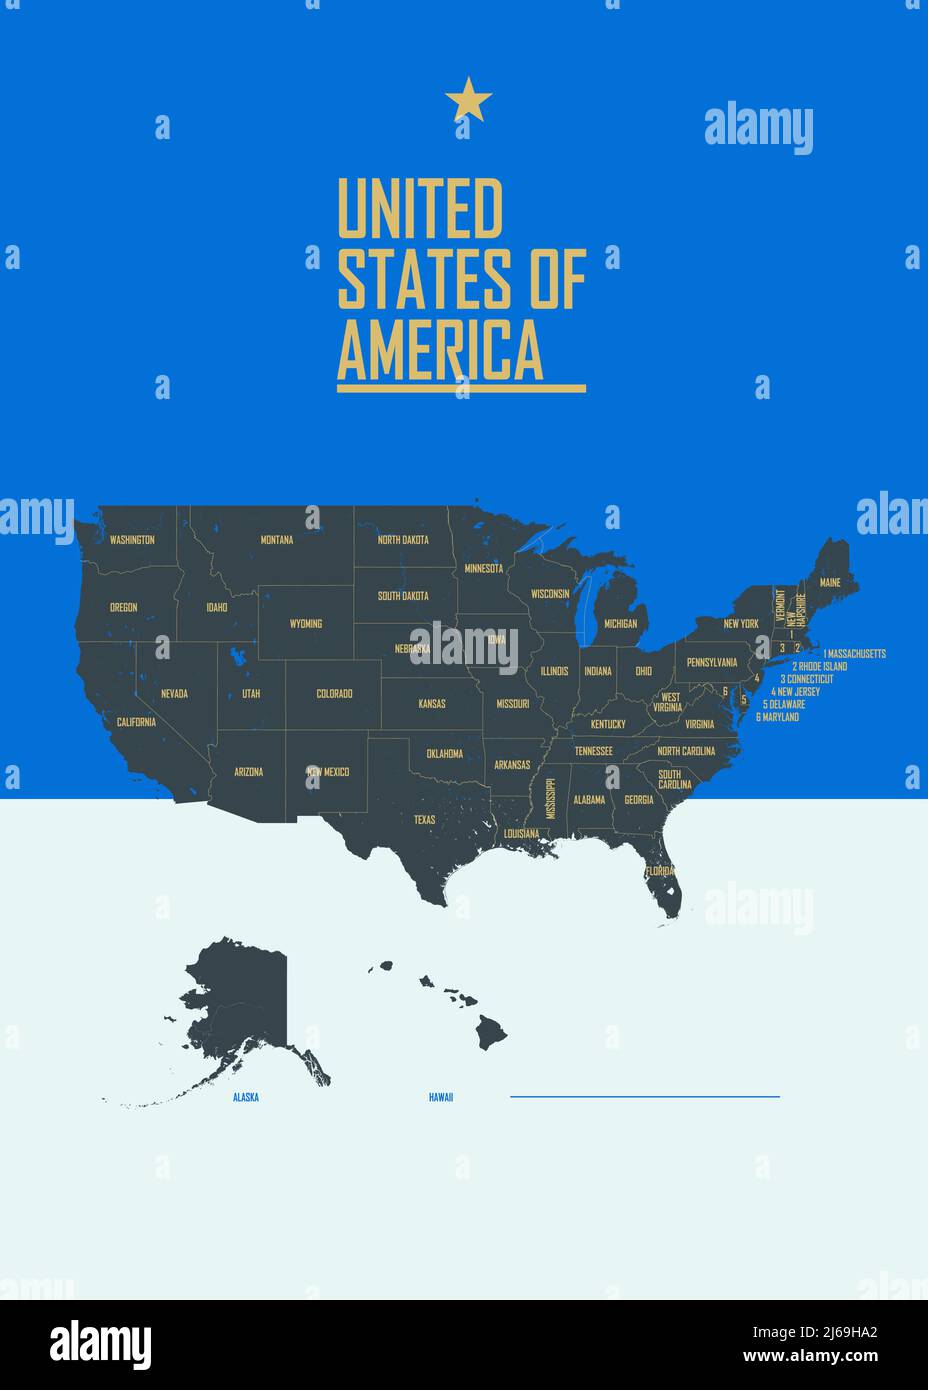 Farbposter mit detaillierter Karte der Vereinigten Staaten von Amerika, mit Staatsnamen, Vektorgrafik Stock Vektor